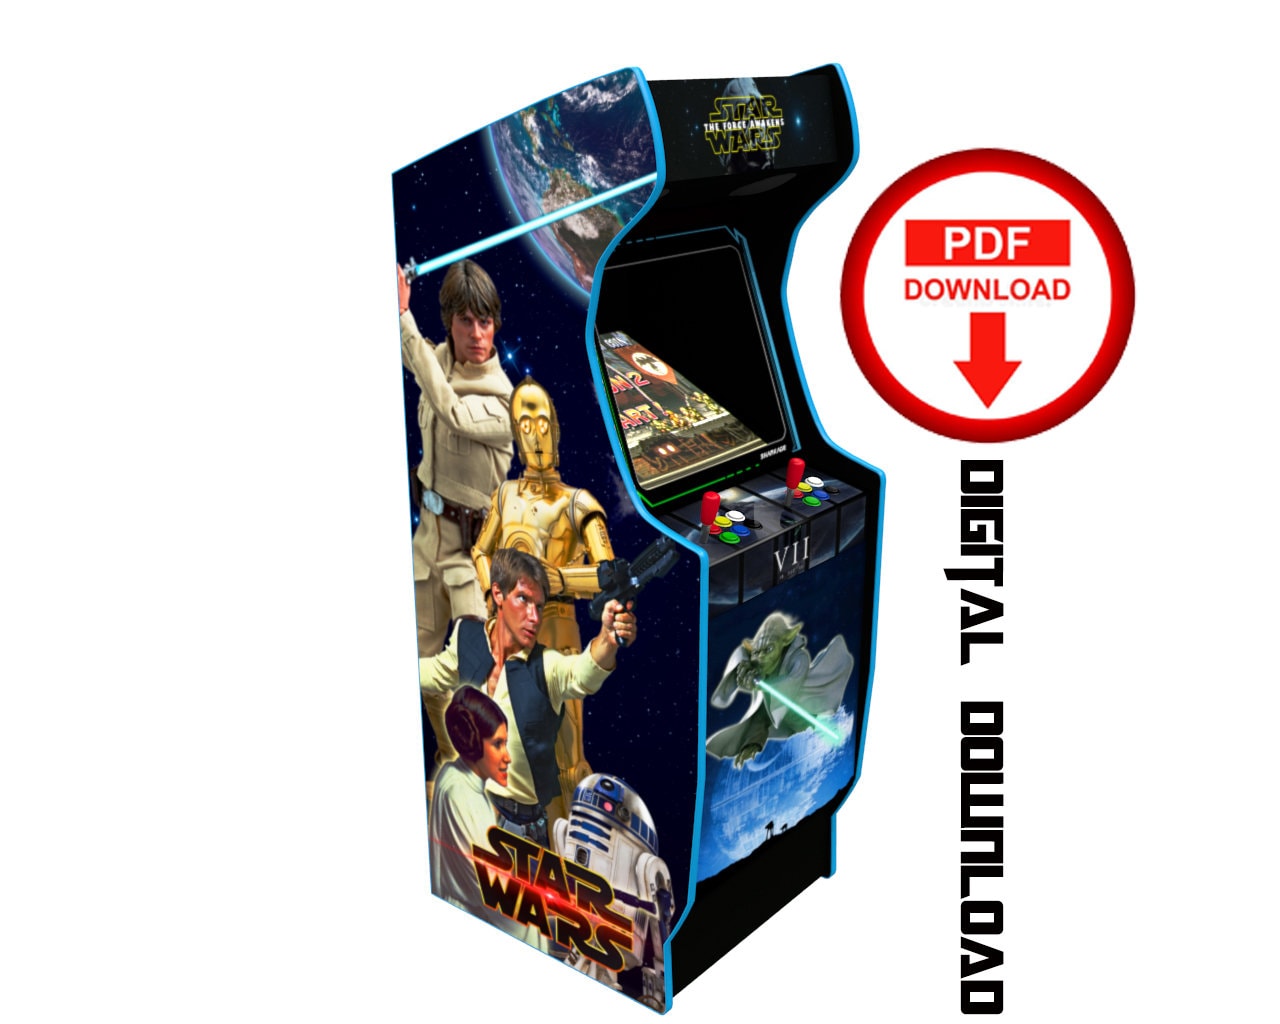 Star Wars Model 1 Arcade Cabinet Machine Artwork Graphics Vinyl